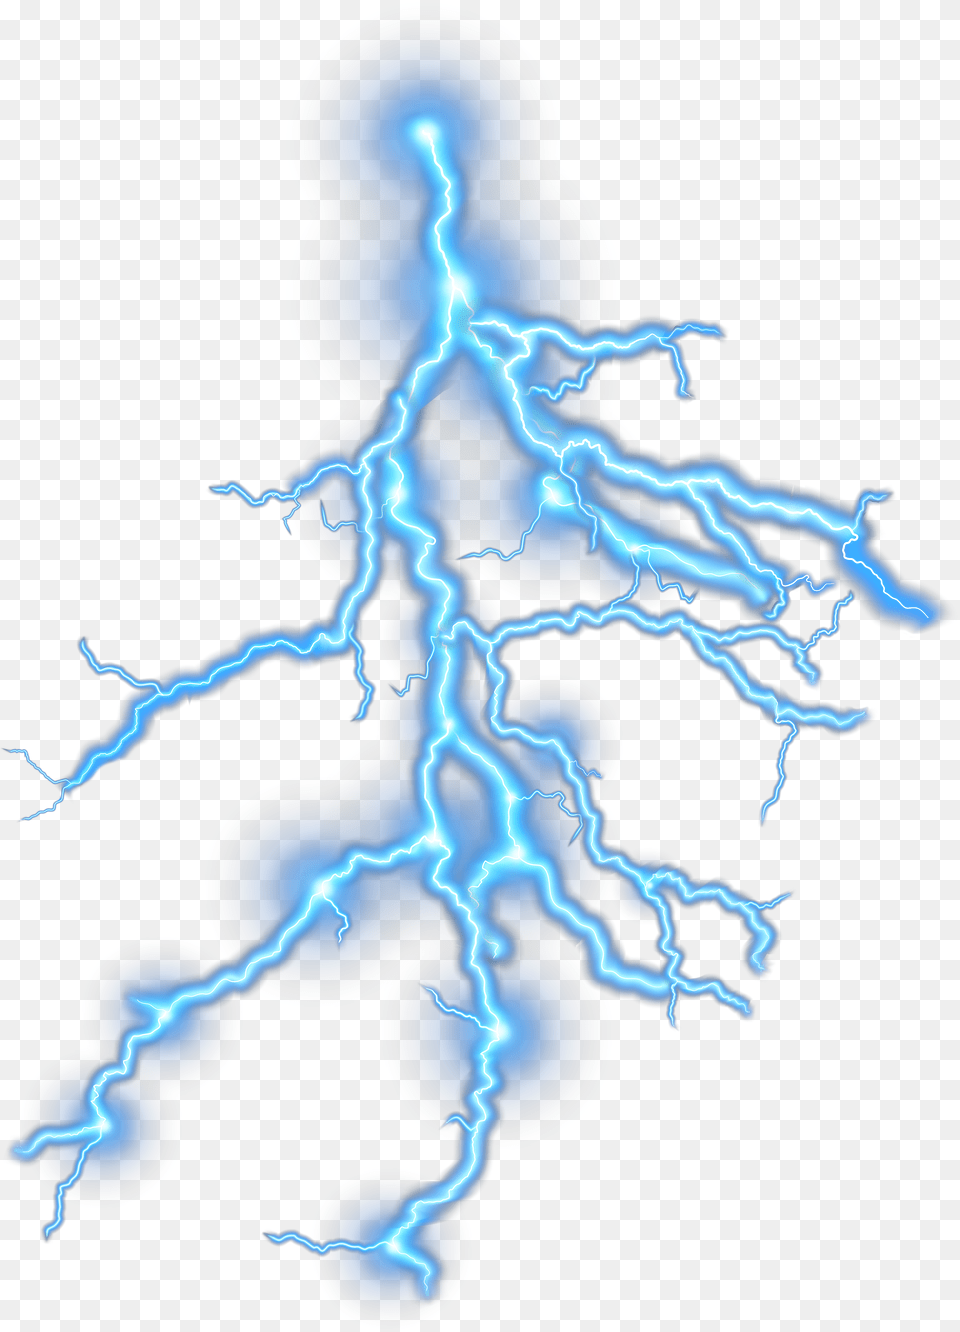 Oklahoma City Thunder Nba Lightning Transparent Background Thunder Png Image